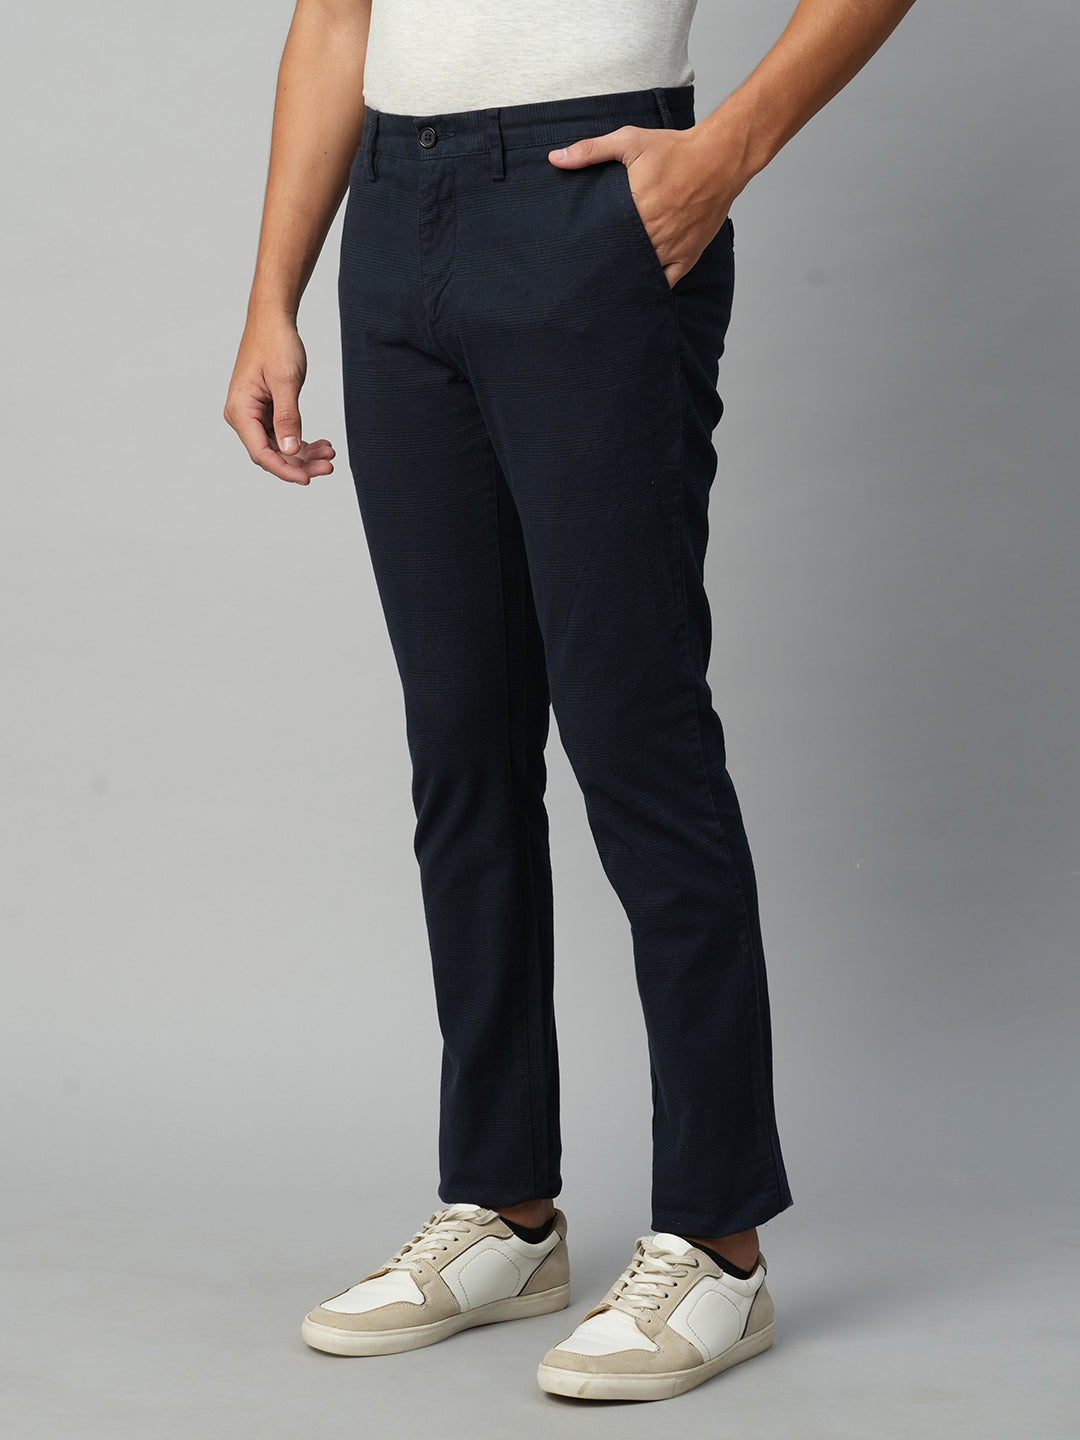 Men's Navy Cotton Spandex Slim Fit Pant